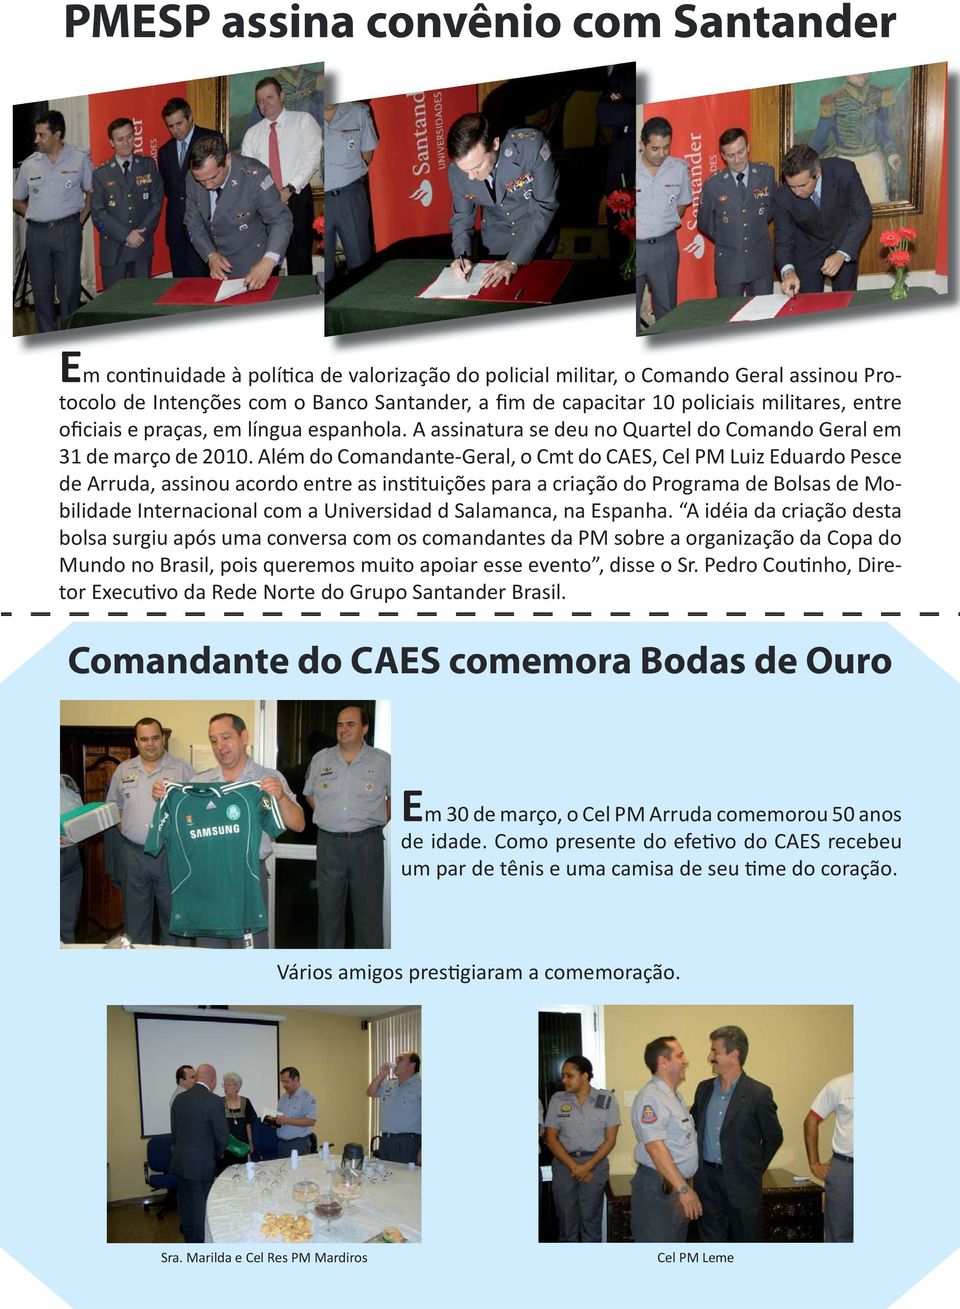 Além do Comandante-Geral, o Cmt do CAES, Cel PM Luiz Eduardo Pesce de Arruda, assinou acordo entre as instituições para a criação do Programa de Bolsas de Mobilidade Internacional com a Universidad d